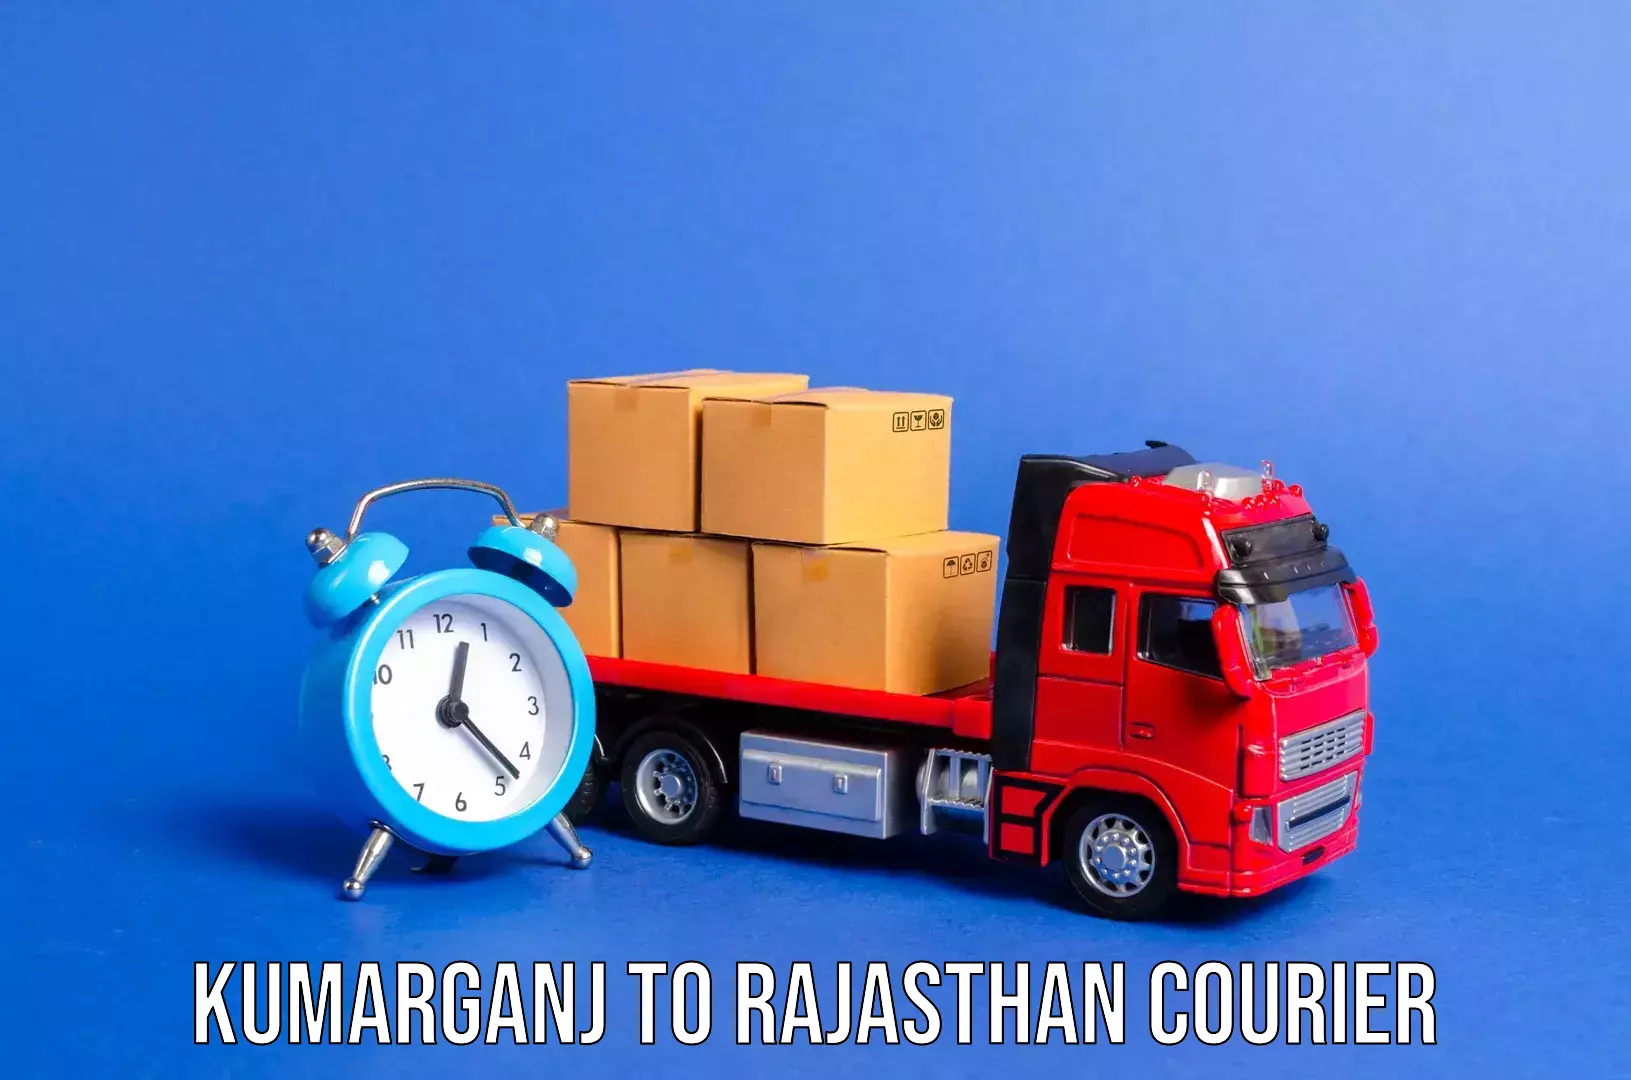 Luggage transport consultancy Kumarganj to Jayal